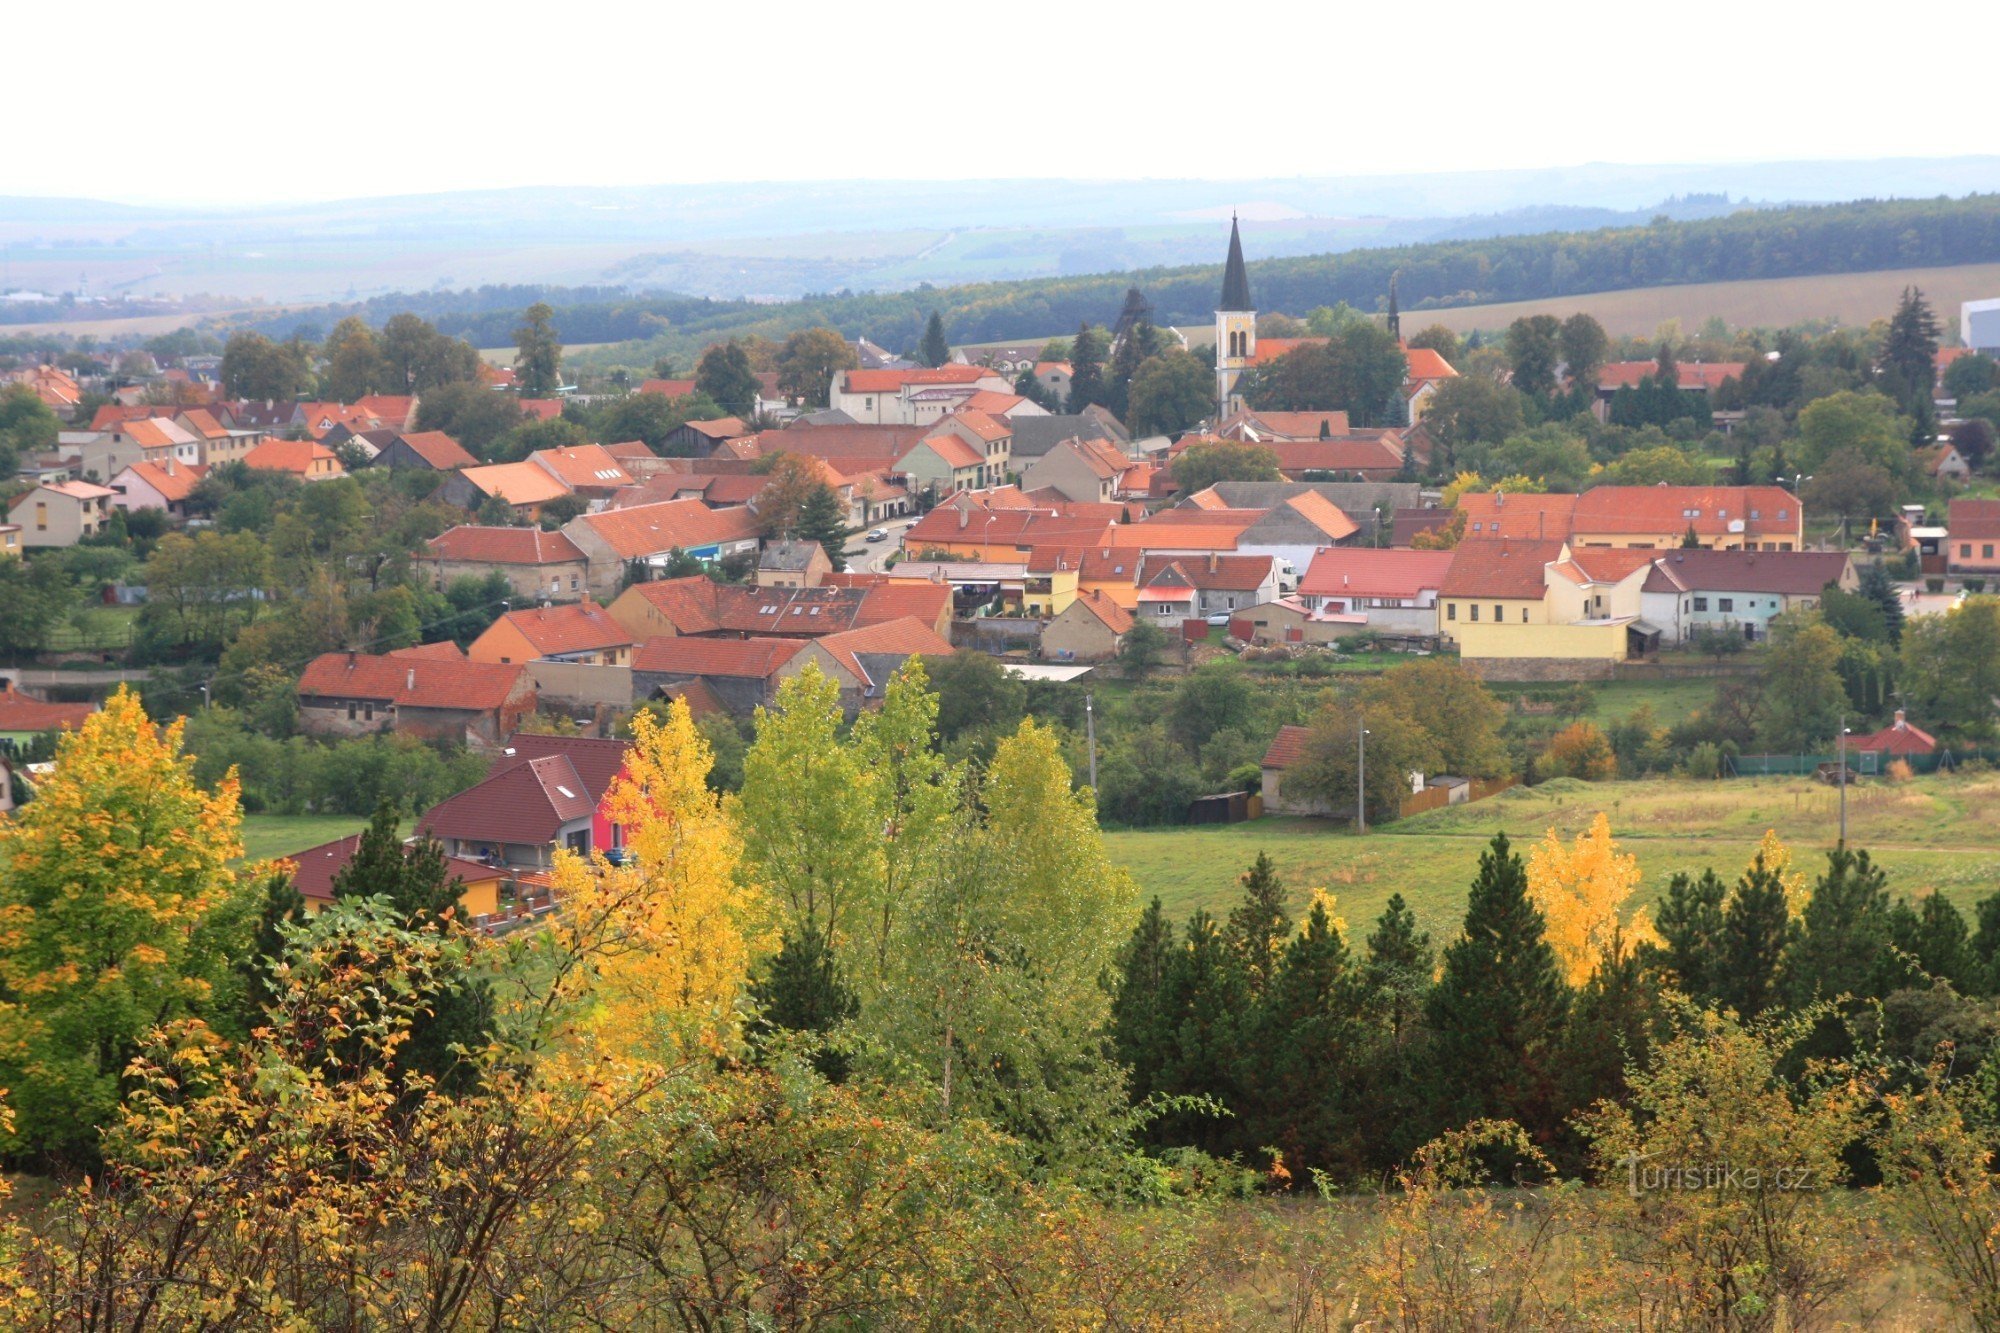 View of the center of Zbýšov